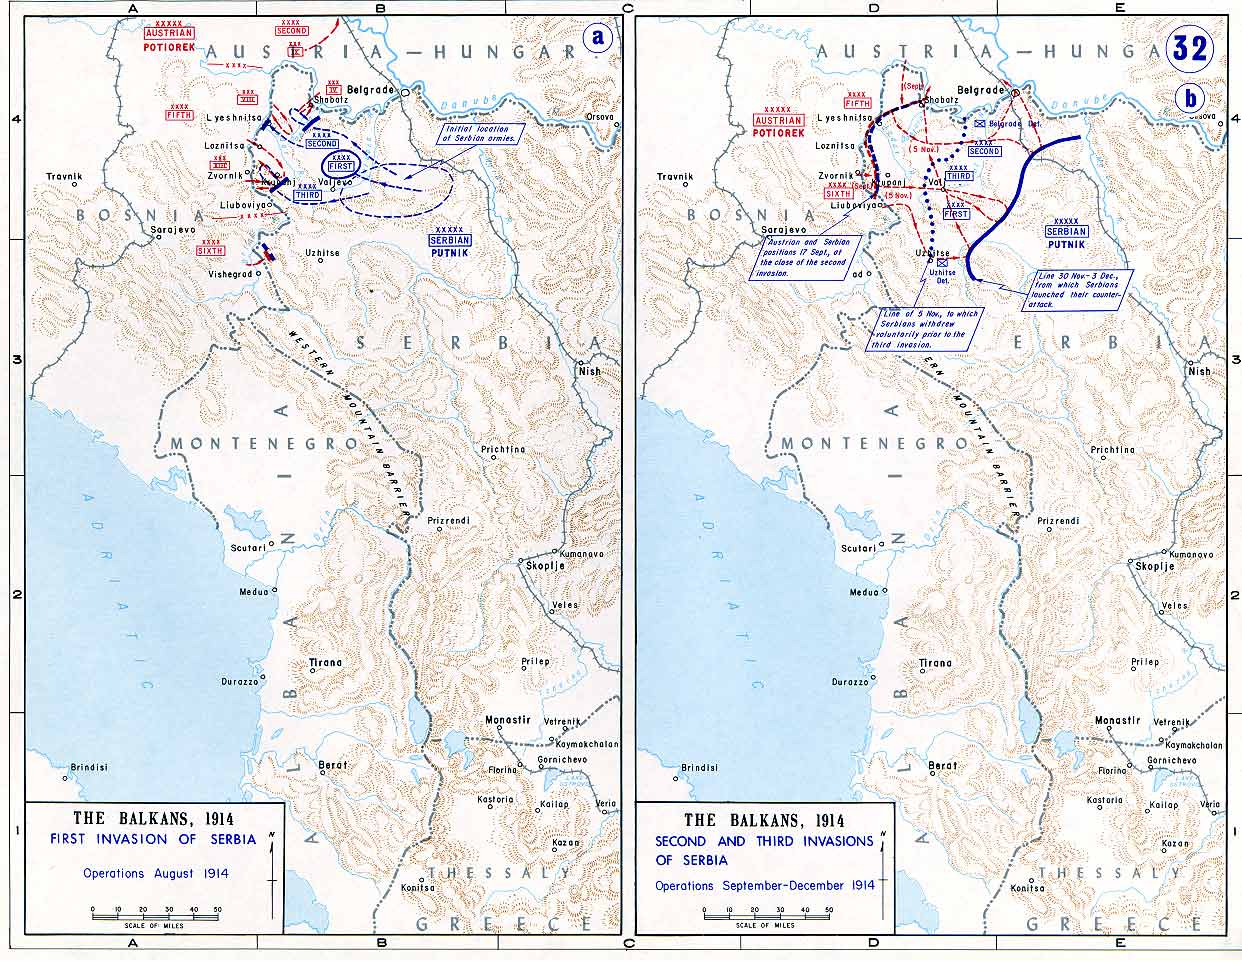 Мапа која се изучава на престижној америчкој војној академији Вест Поинт